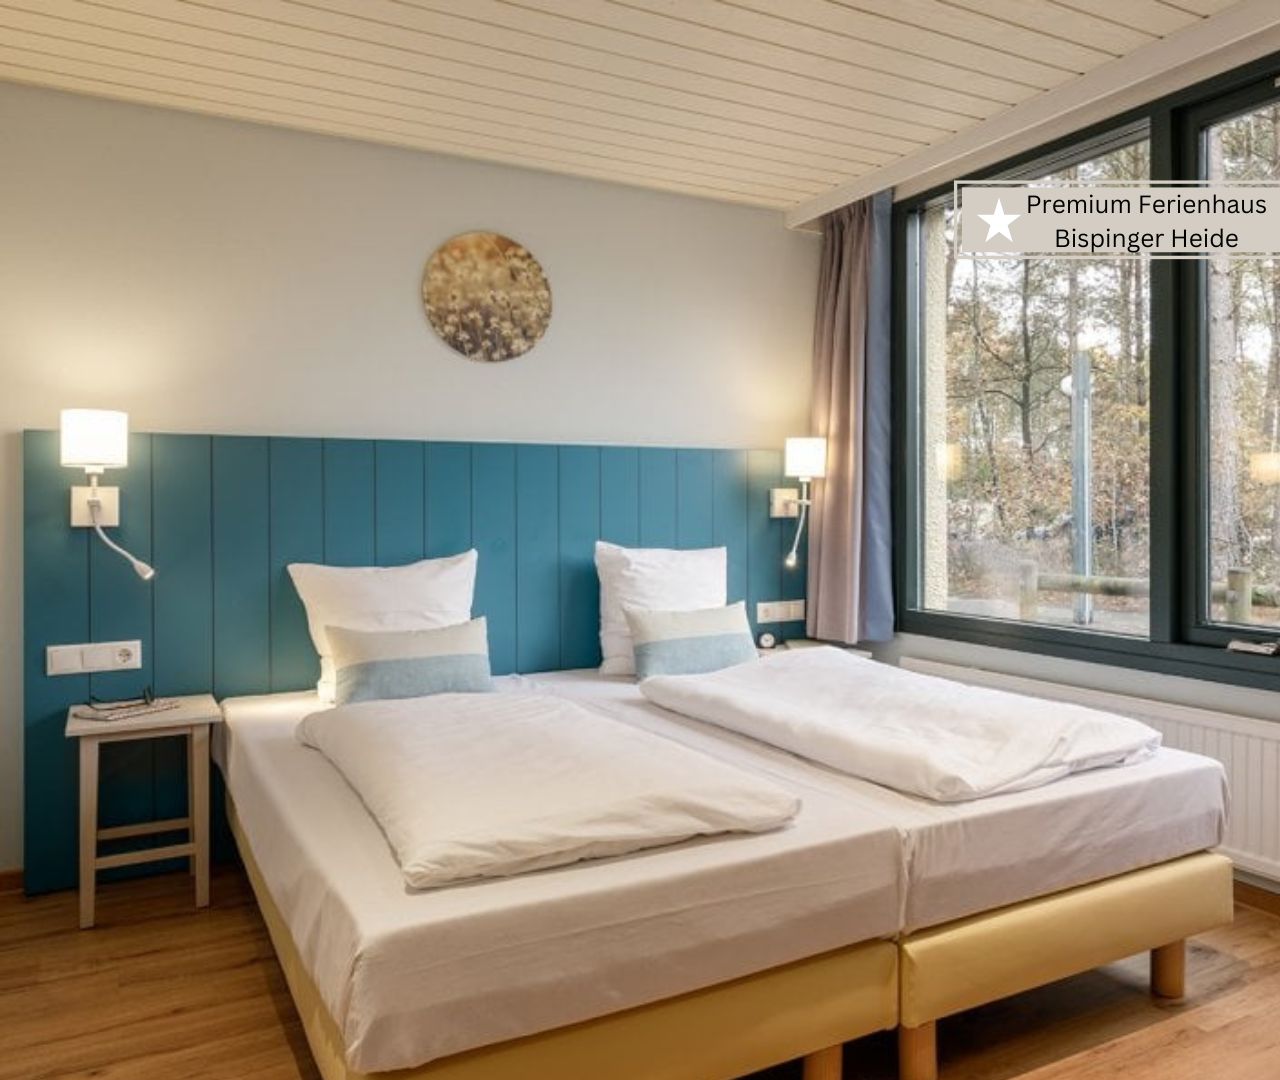 Center Parcs Bispinger Heide mit Kleinen Kindern Schlafzimmer im Premium Ferienhaus